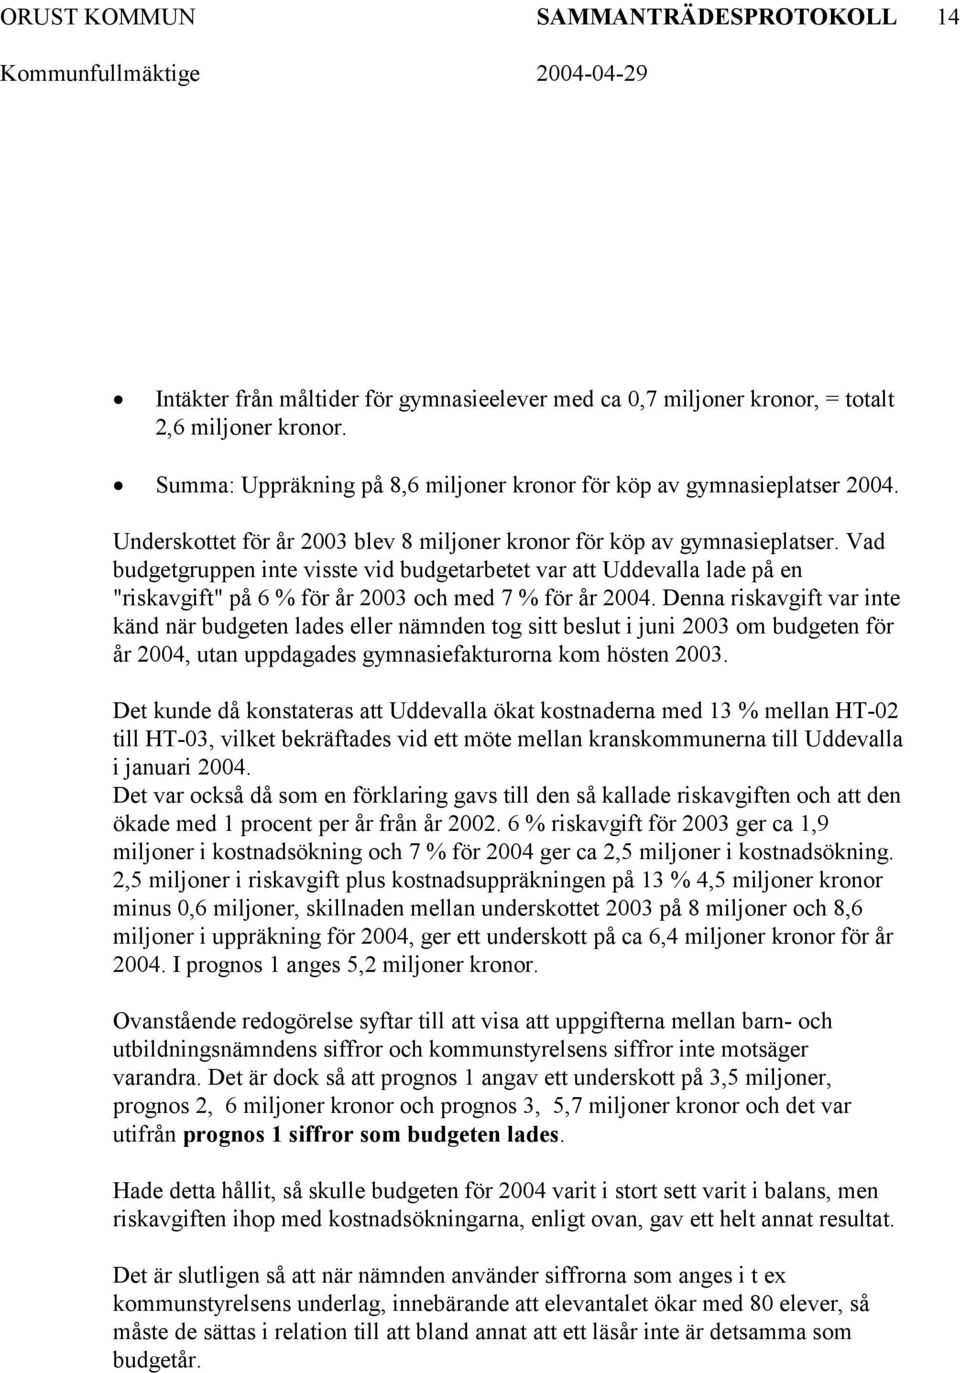 Vad budgetgruppen inte visste vid budgetarbetet var att Uddevalla lade på en "riskavgift" på 6 % för år 2003 och med 7 % för år 2004.